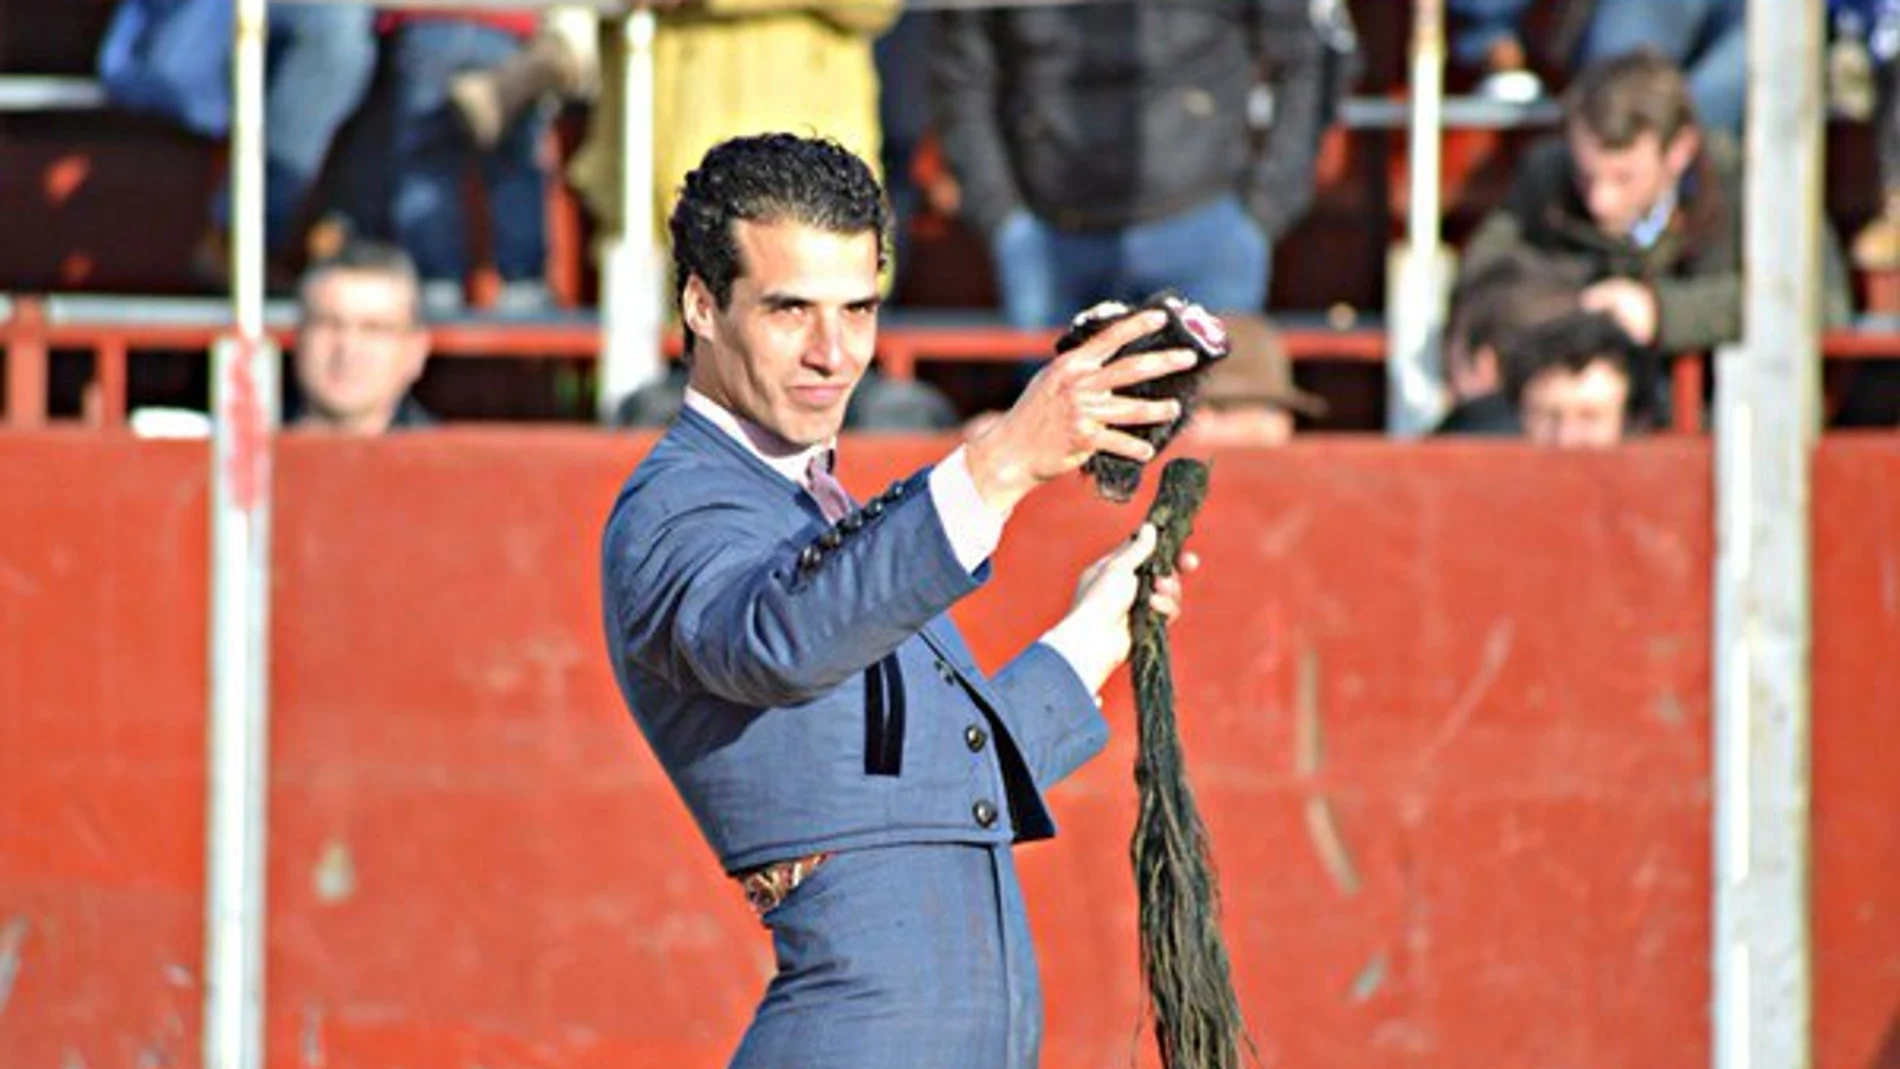 Morenito de Aranda, tras cortar dos orejas y rabo en el festival de Candeleda (Ávila)